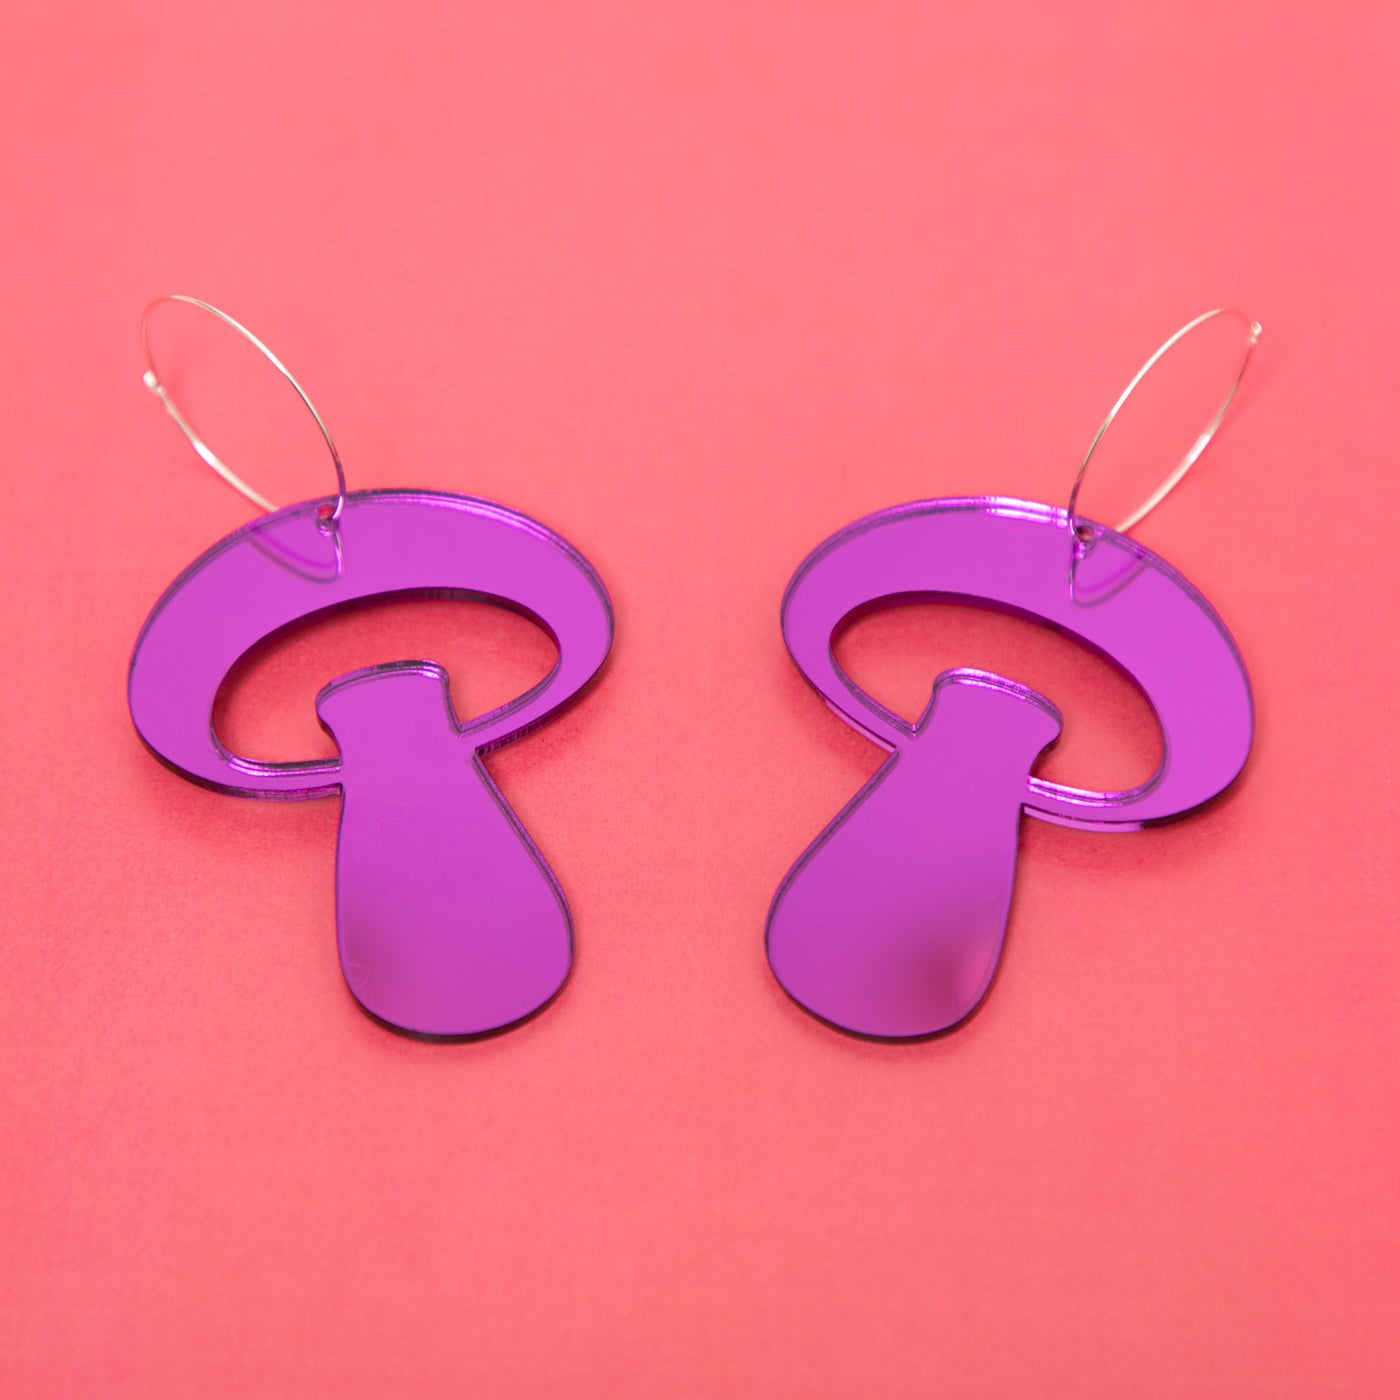 The Alice Mushroom Hoop Earrings,EarringMindFlowers